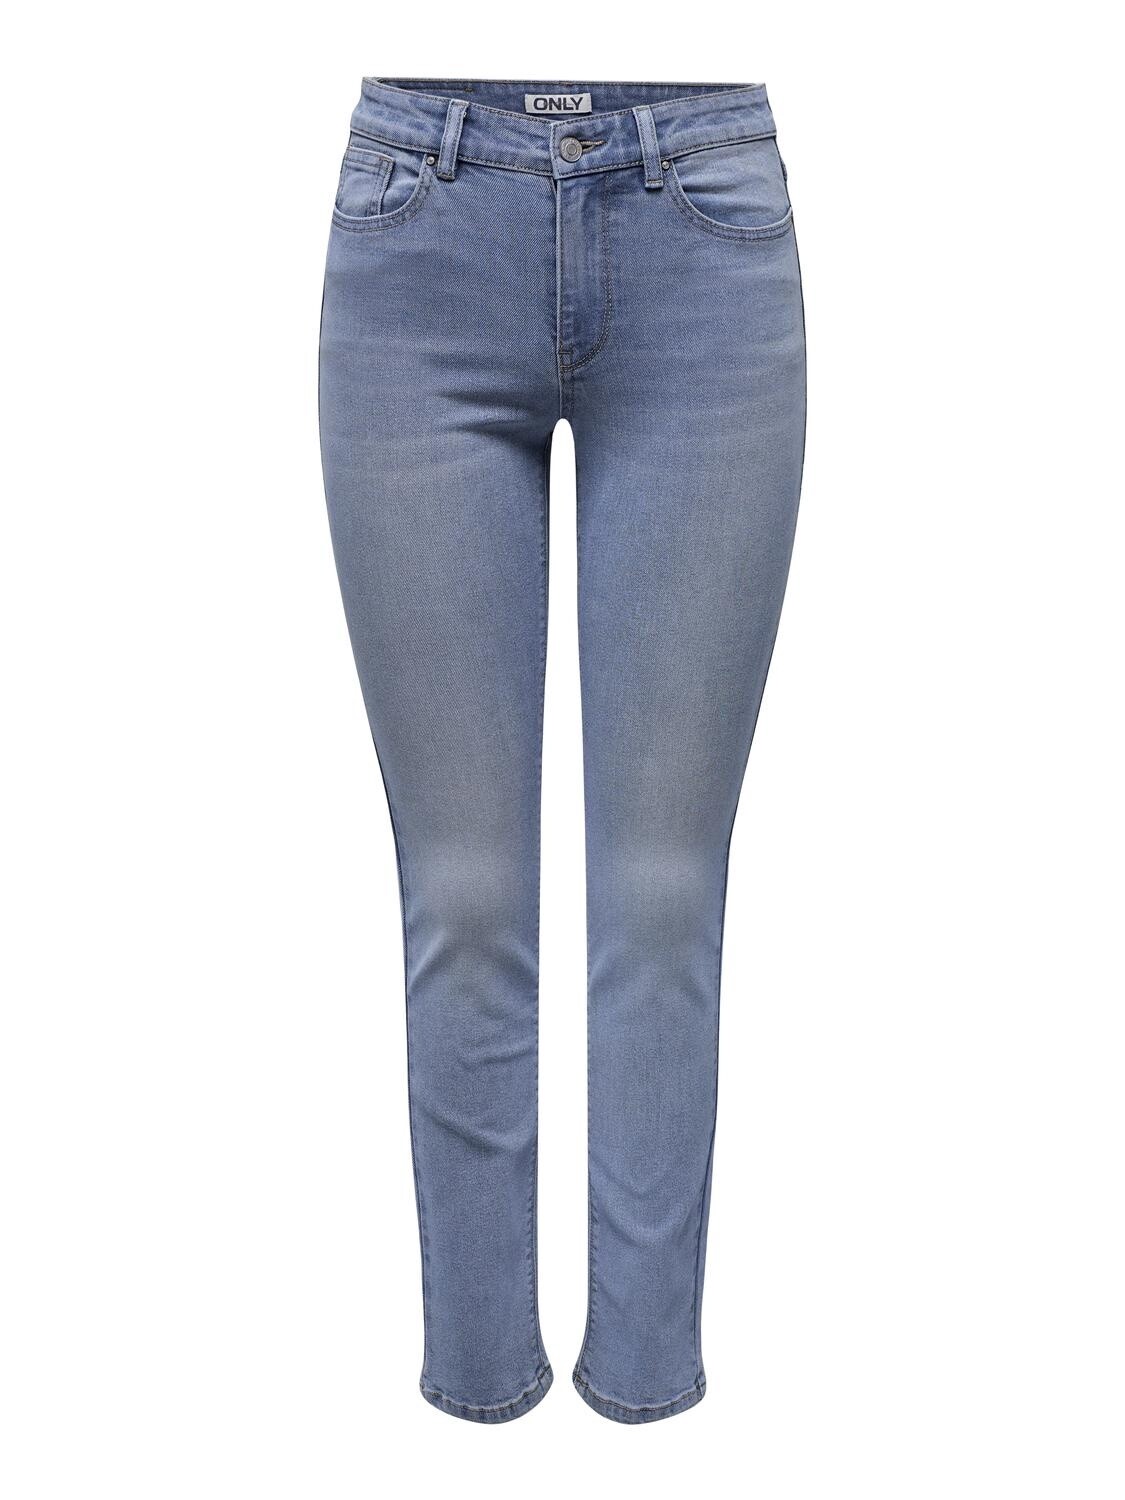 Only Jeans droit taille régulière bleu moyen 15309889, Size: XS